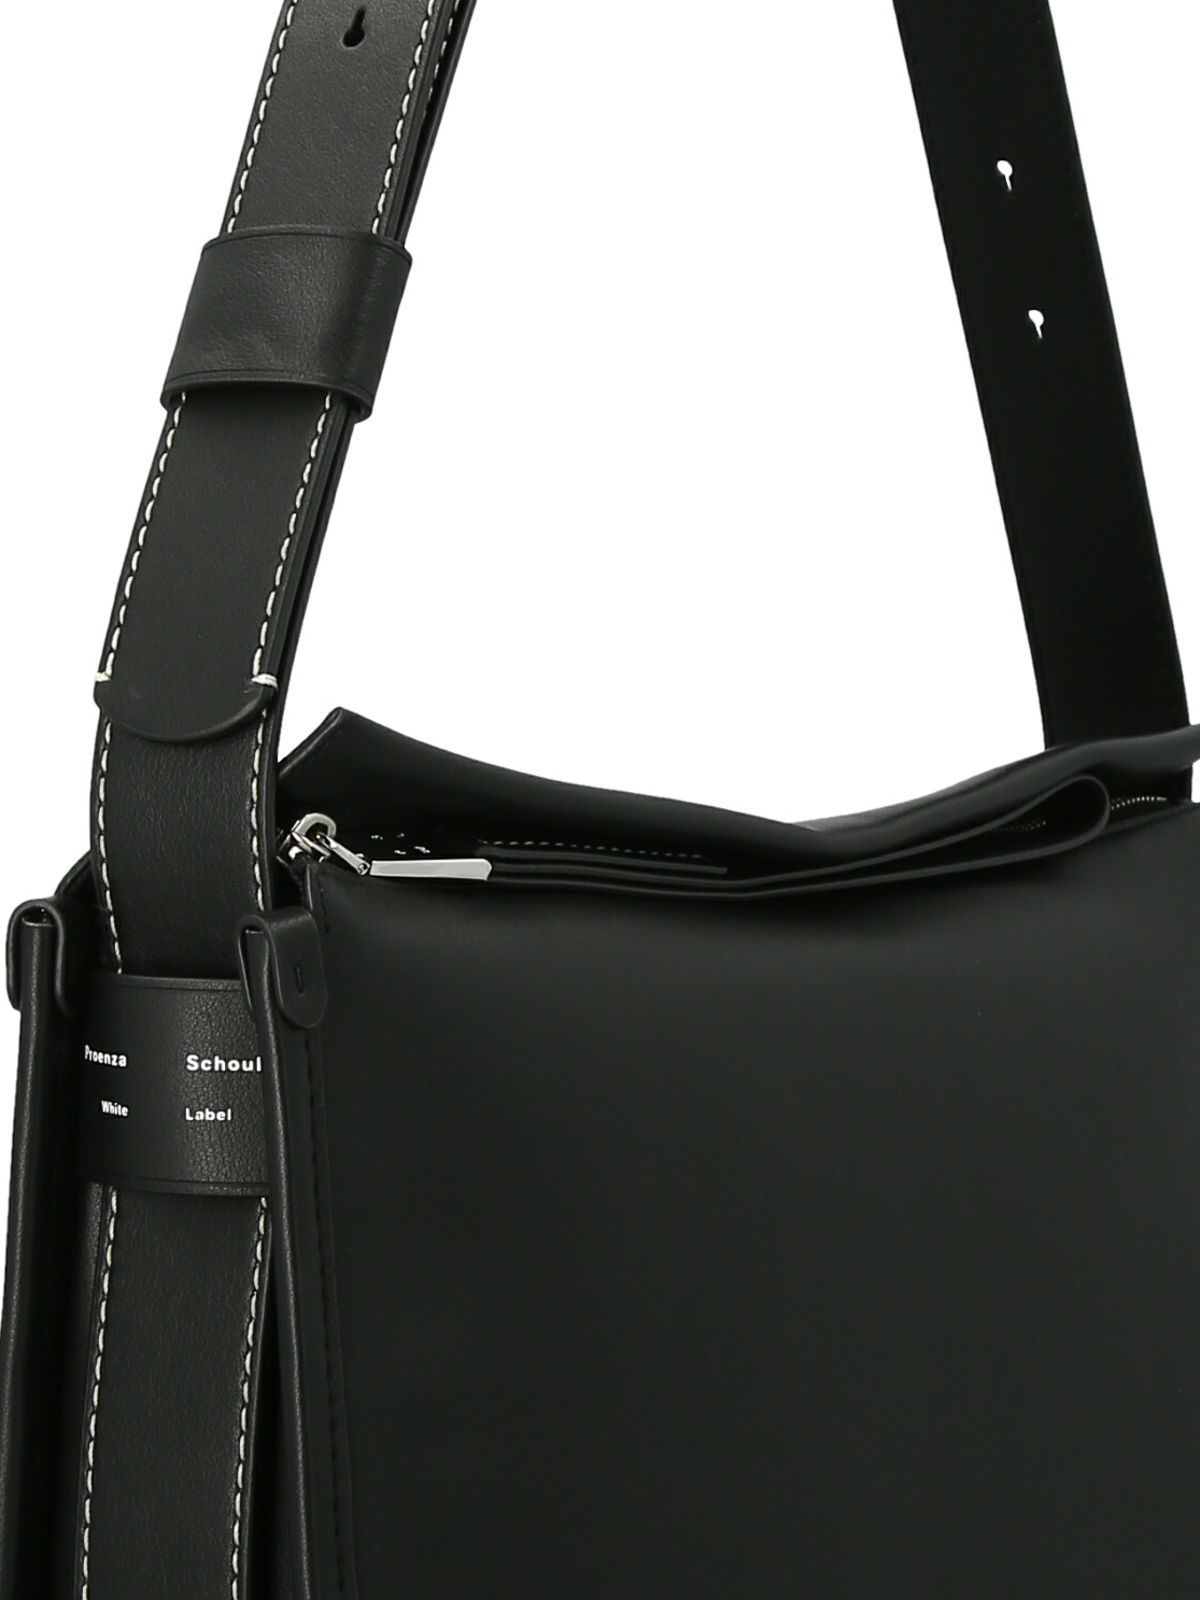 Shoulder bags Proenza Schouler - Baxter shoulder bag - WB223017001